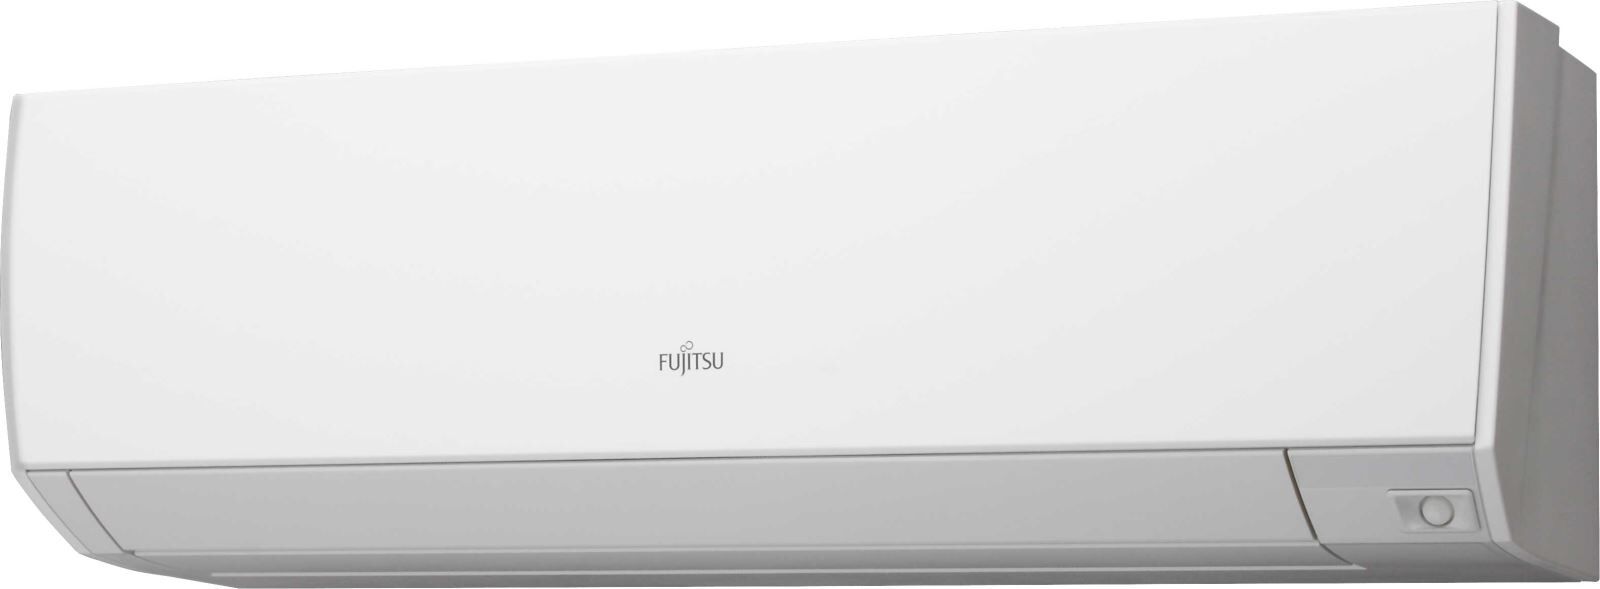 Кондиционер сплит-система Fujitsu ASYG14KHCA/AOYG14KHCAN цена 0 грн - фотография 2